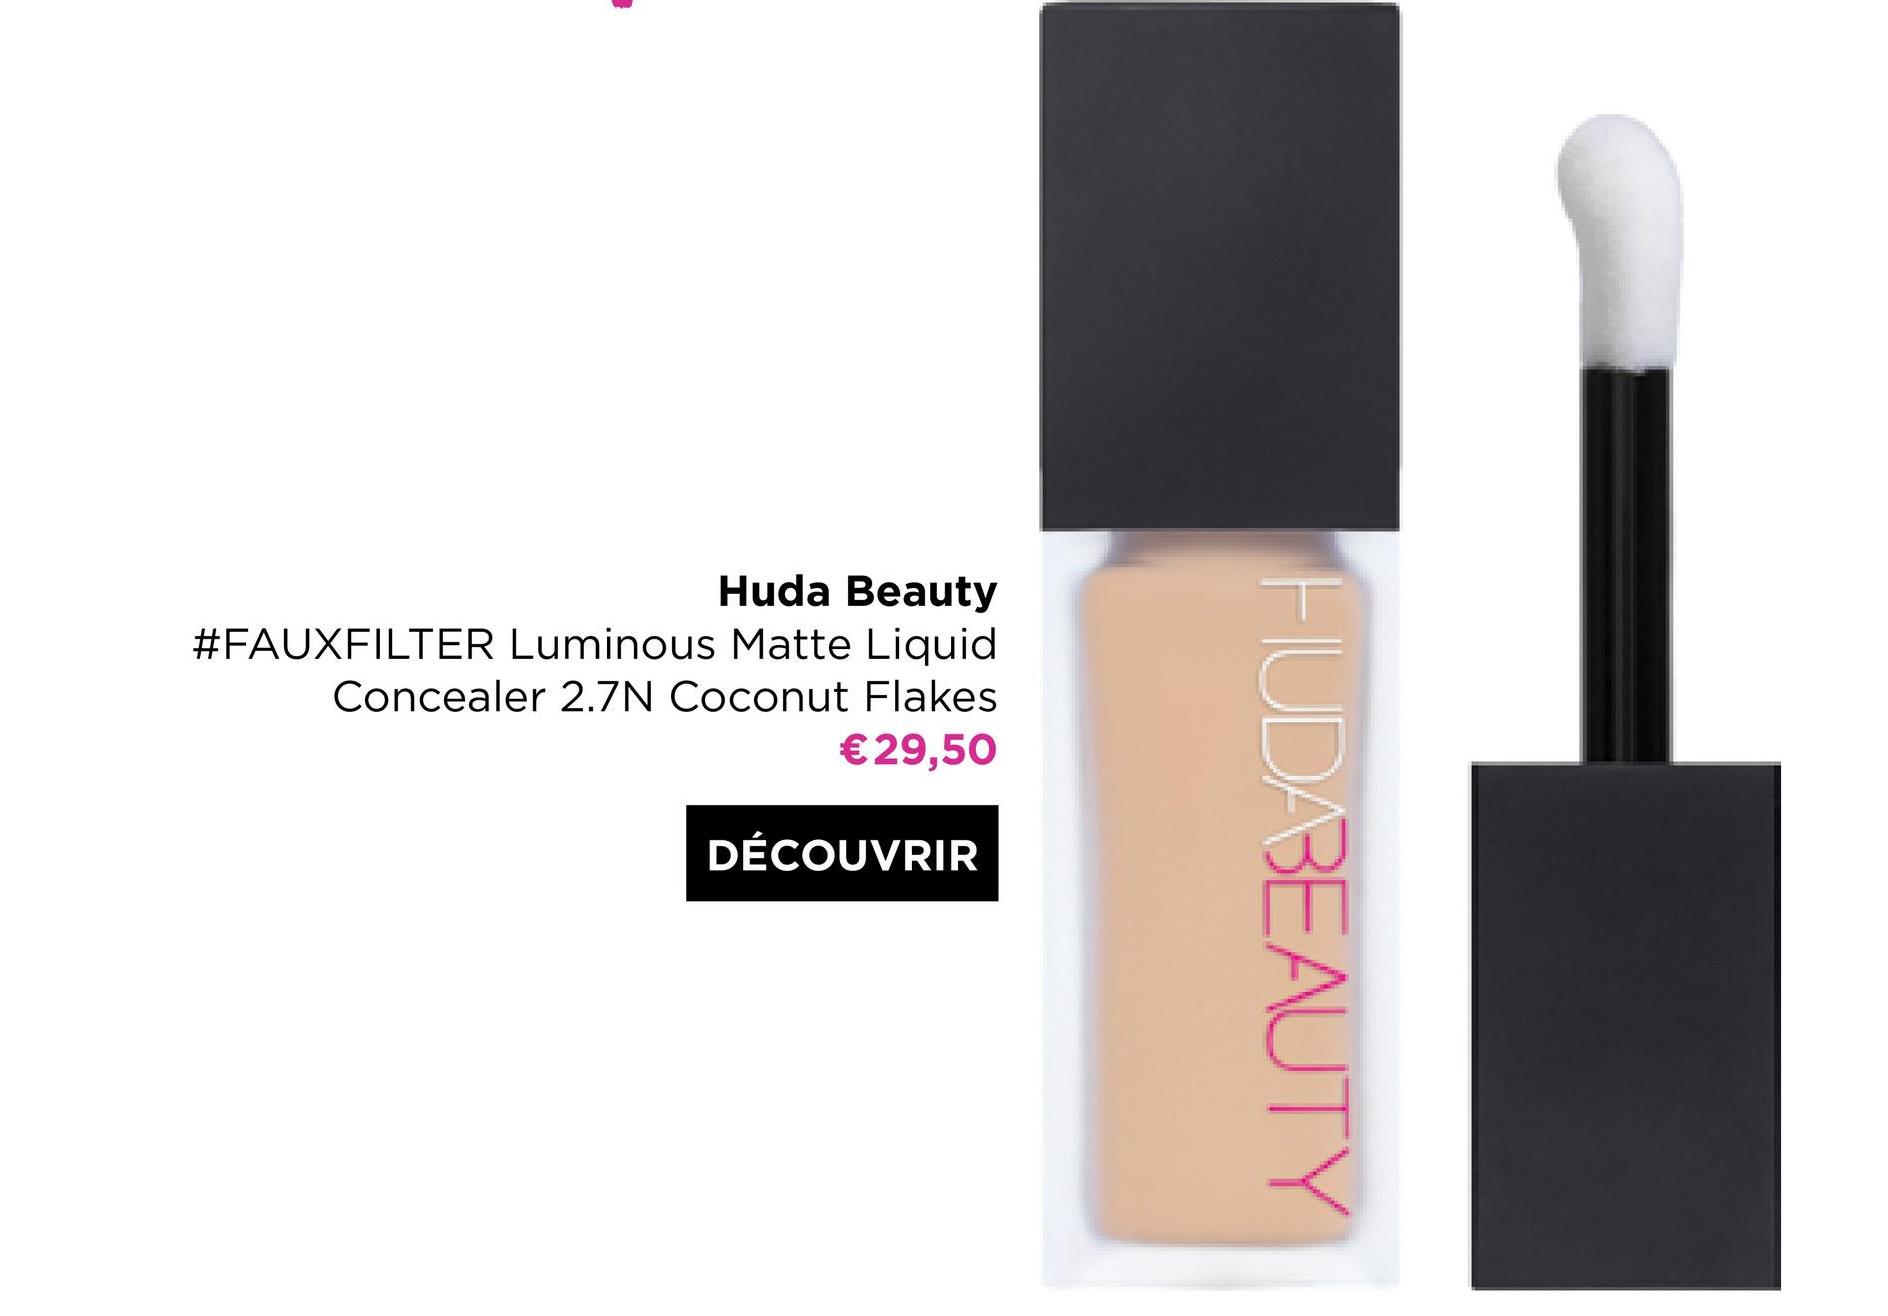 Huda Beauty
#FAUXFILTER Luminous Matte Liquid
Concealer 2.7N Coconut Flakes
€29,50
DÉCOUVRIR
HUDABEAUTY